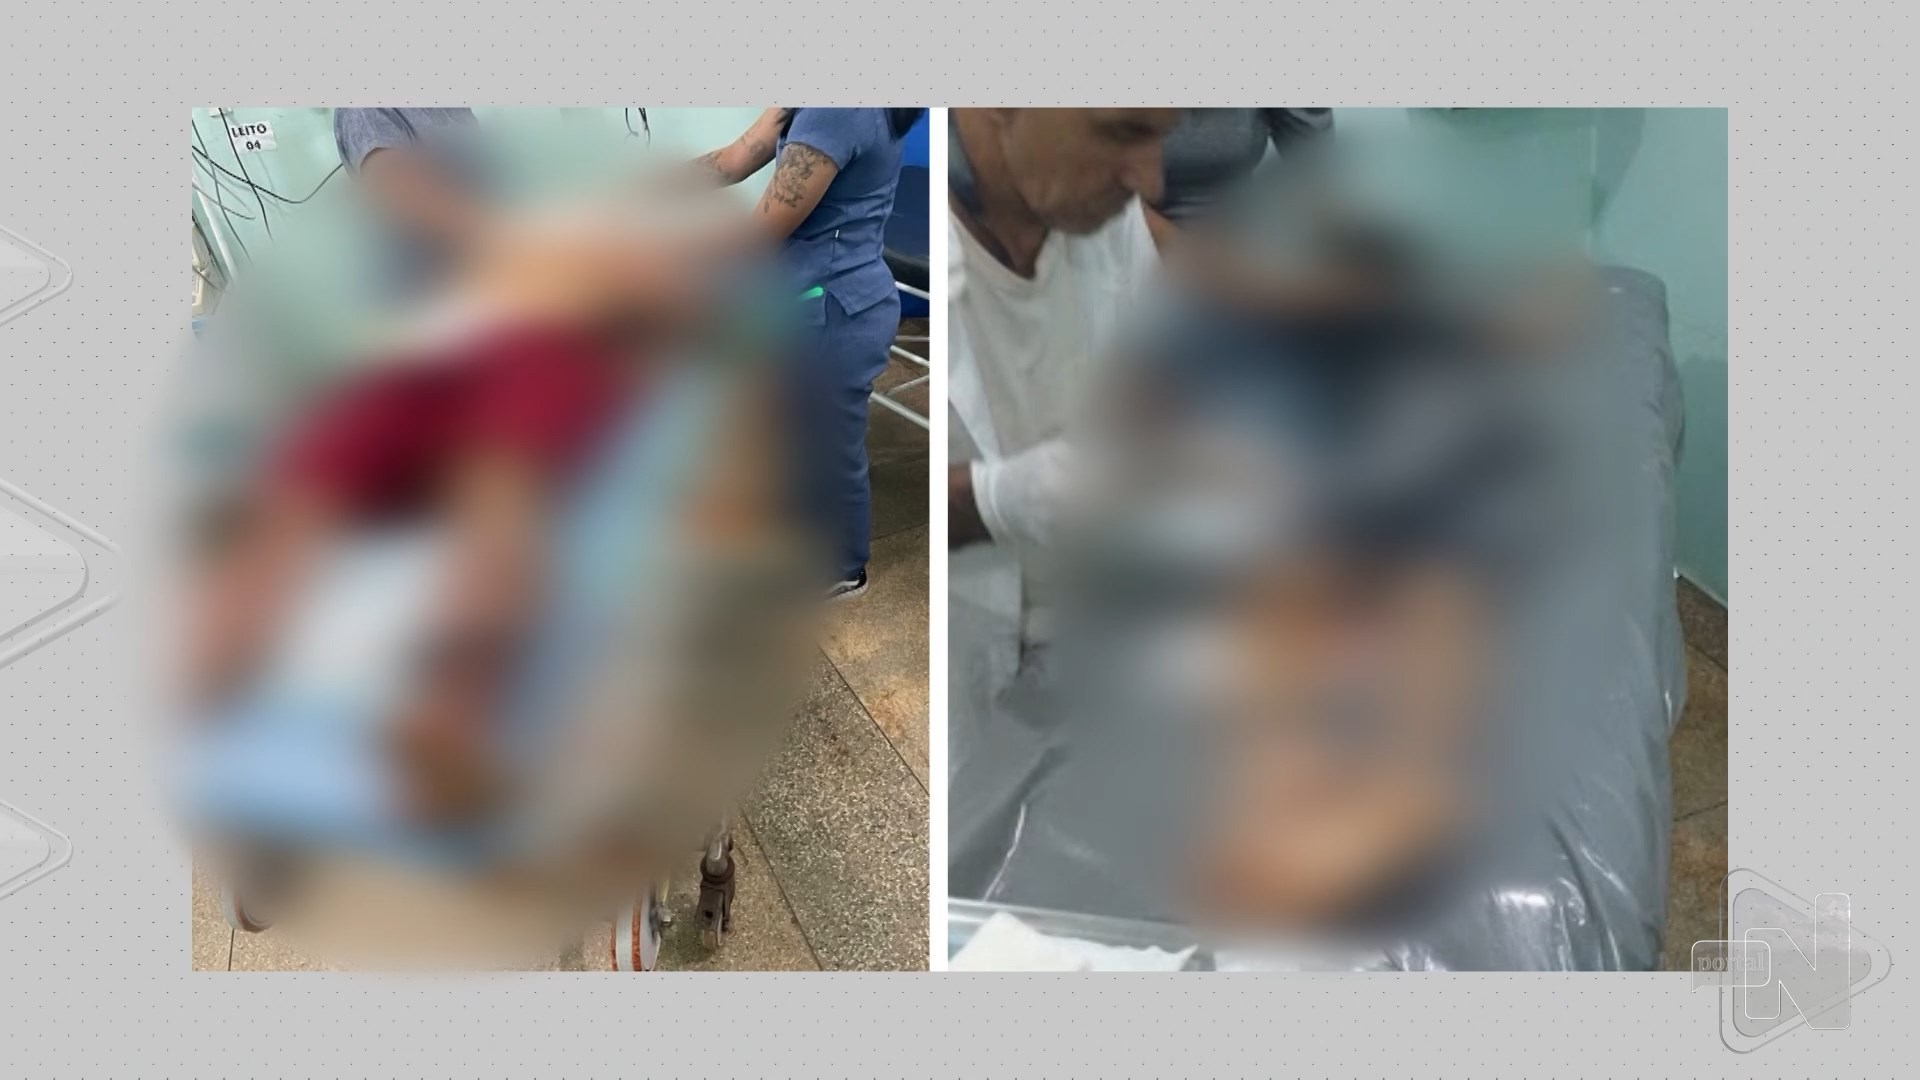 Criança é baleada por suspeitos em Iranduba, interior do Amazonas